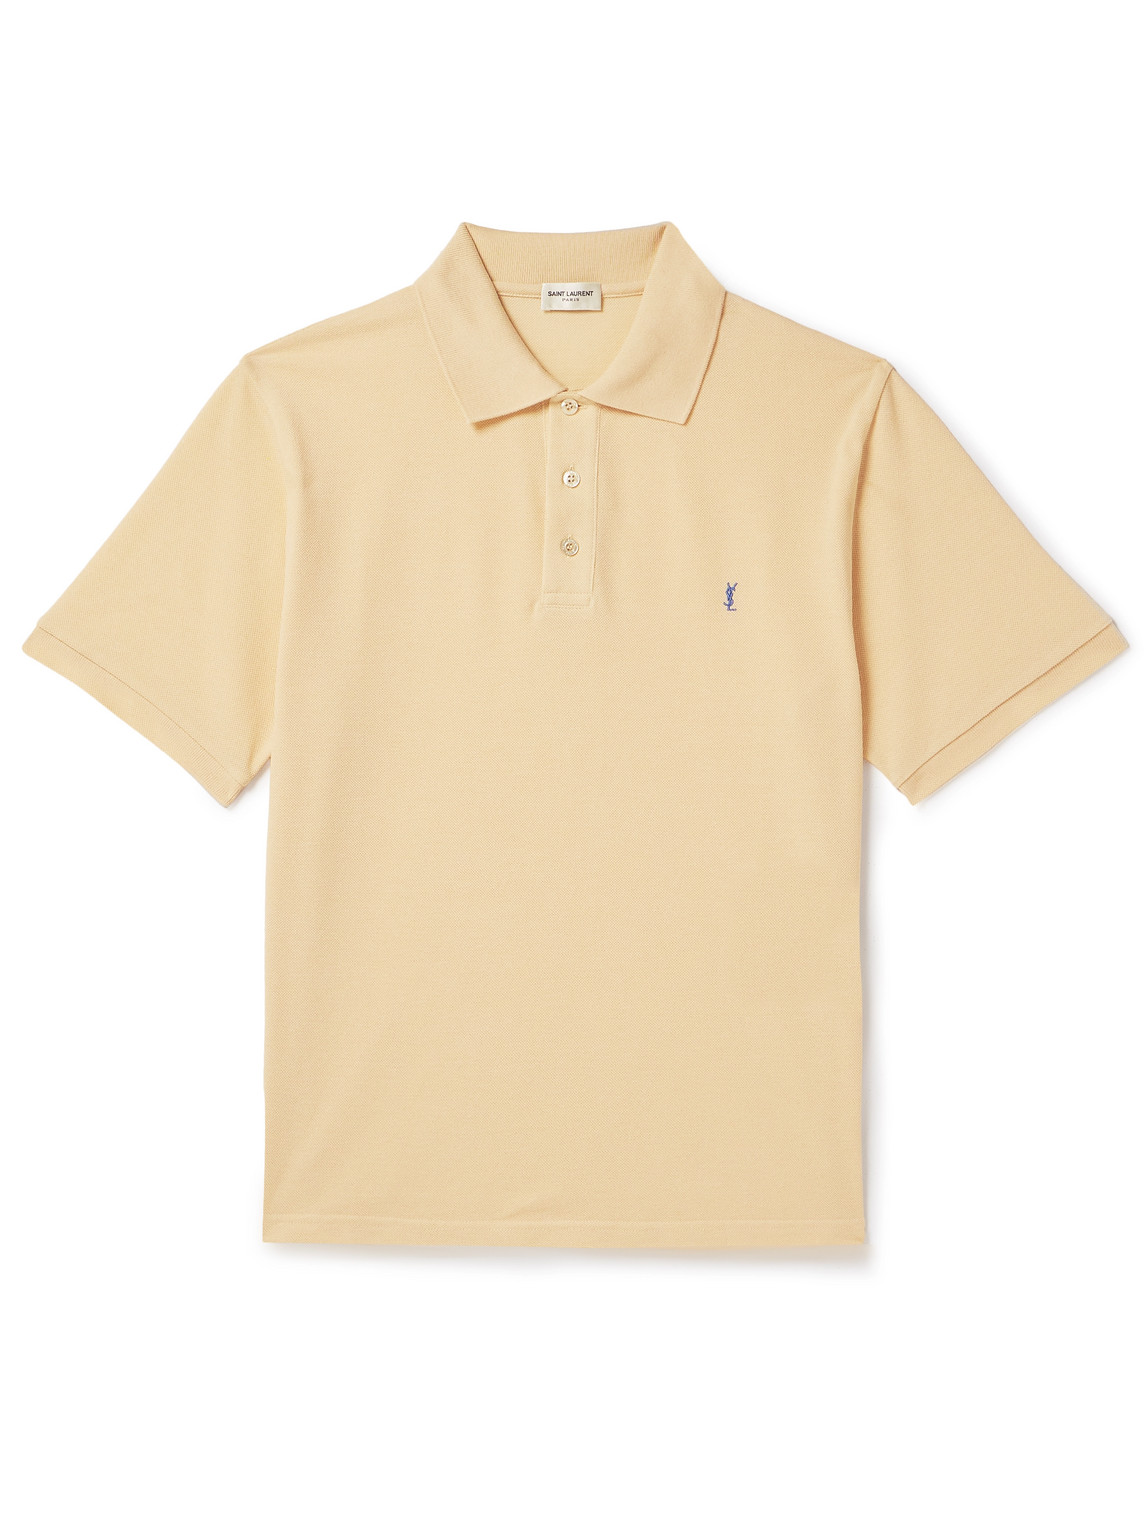 SAINT LAURENT - Logo-Embroidered Cotton-Blend Piqué Polo Shirt - Men - Yellow - XL von SAINT LAURENT